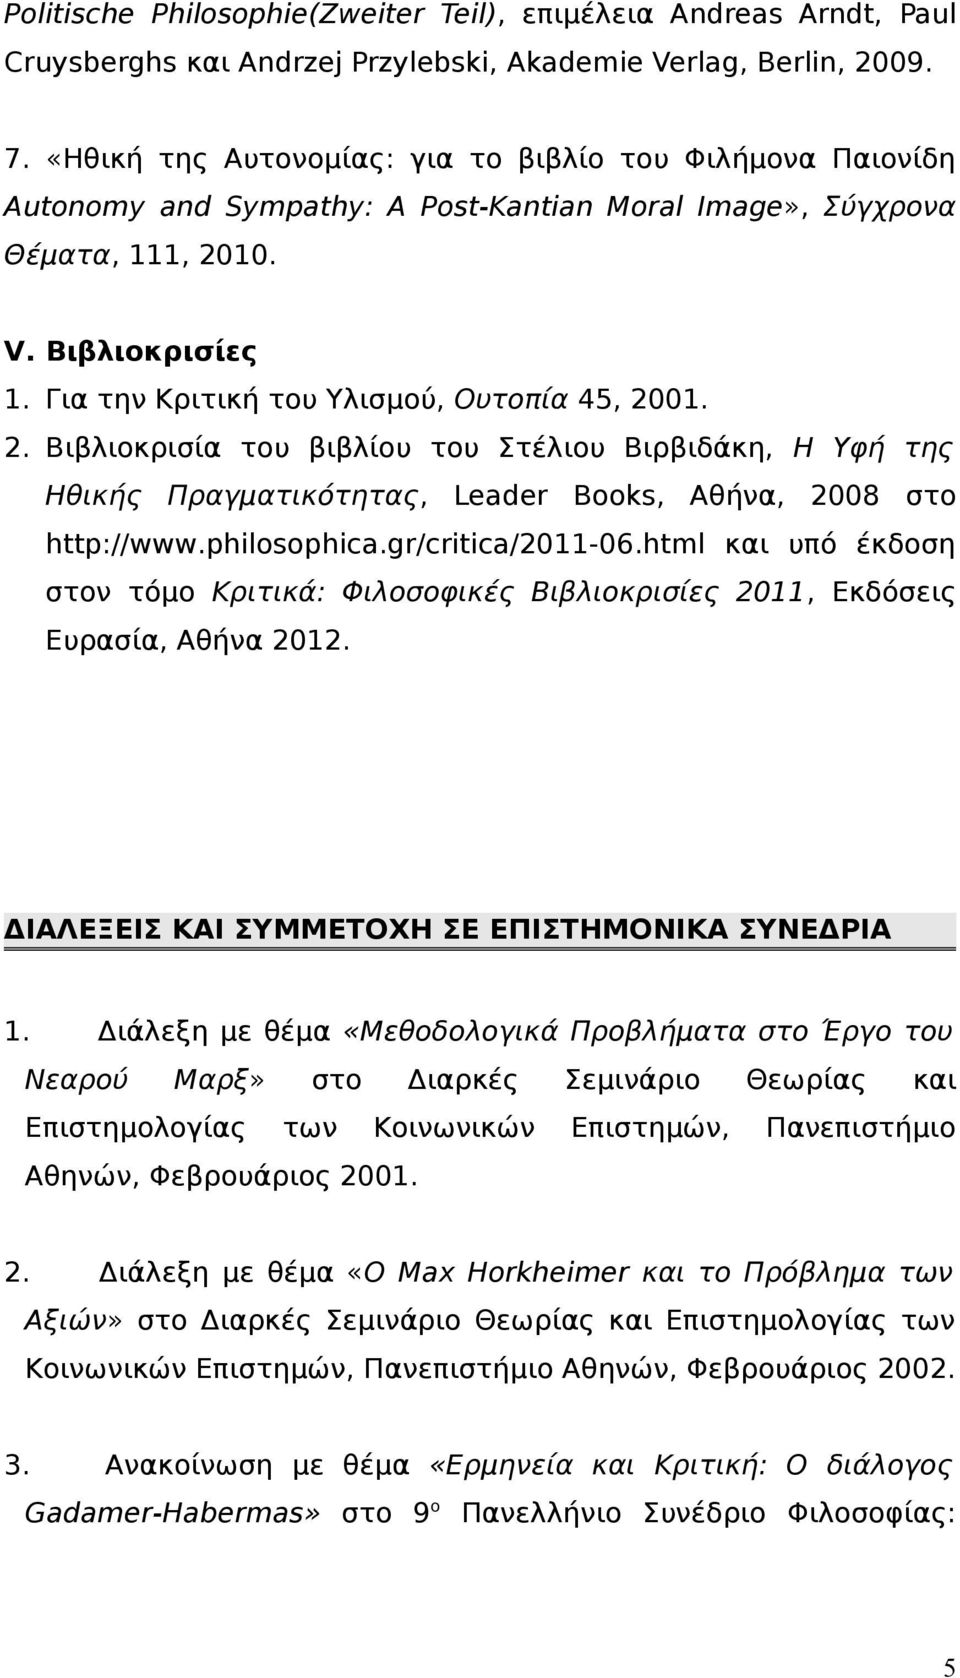 Για την Κριτική του Υλισμού, Ουτοπία 45, 2001. 2. Βιβλιοκρισία του βιβλίου του Στέλιου Βιρβιδάκη, Η Υφή της Ηθικής Πραγματικότητας, Leader Books, Αθήνα, 2008 στο http://www.philosophica.